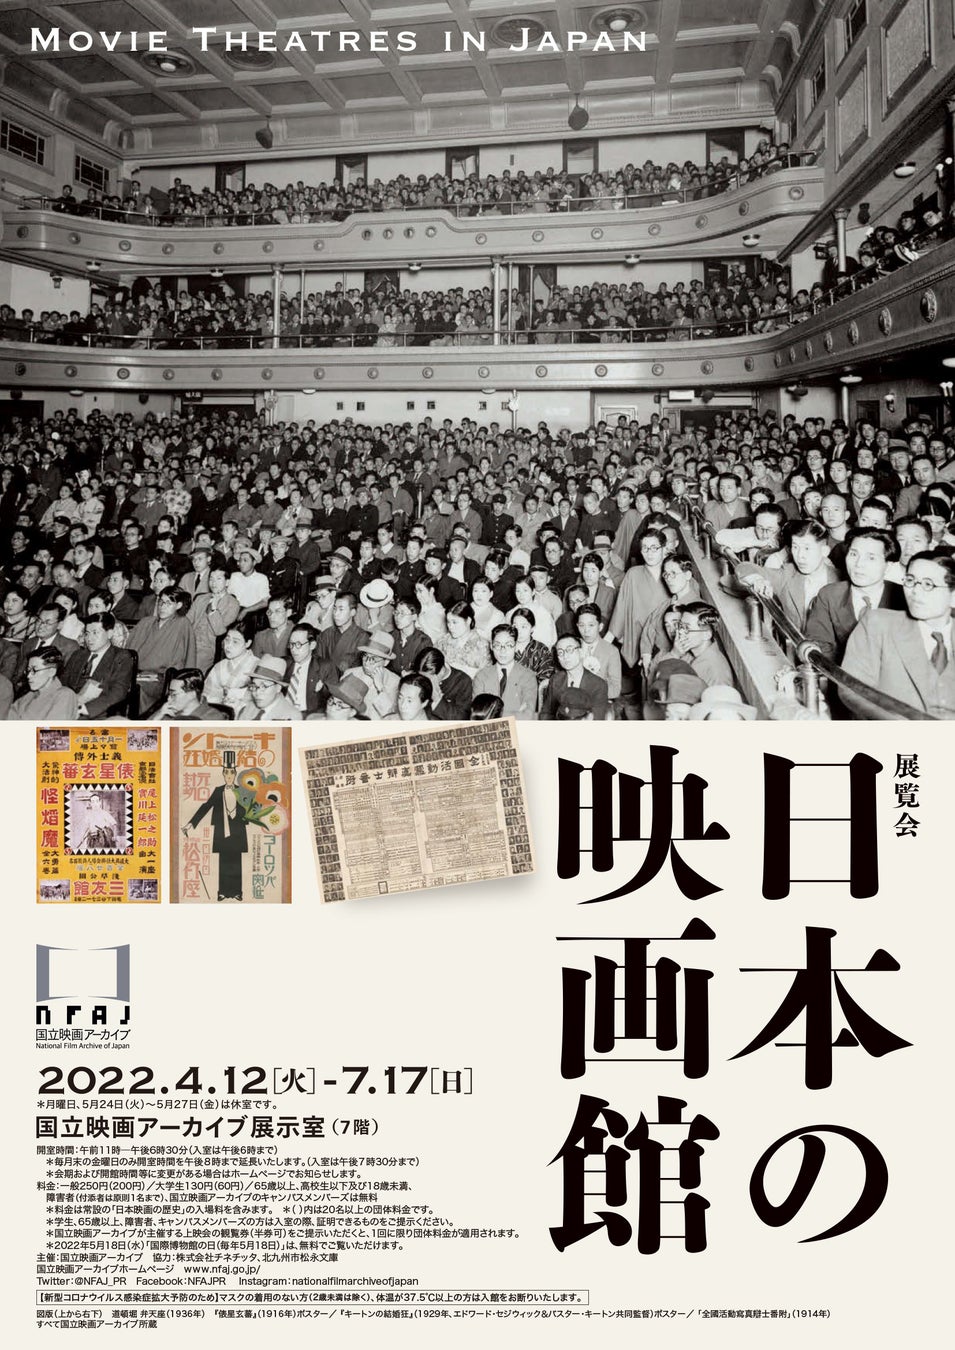 【国立映画アーカイブ】展覧会「日本の映画館」開催のお知らせ